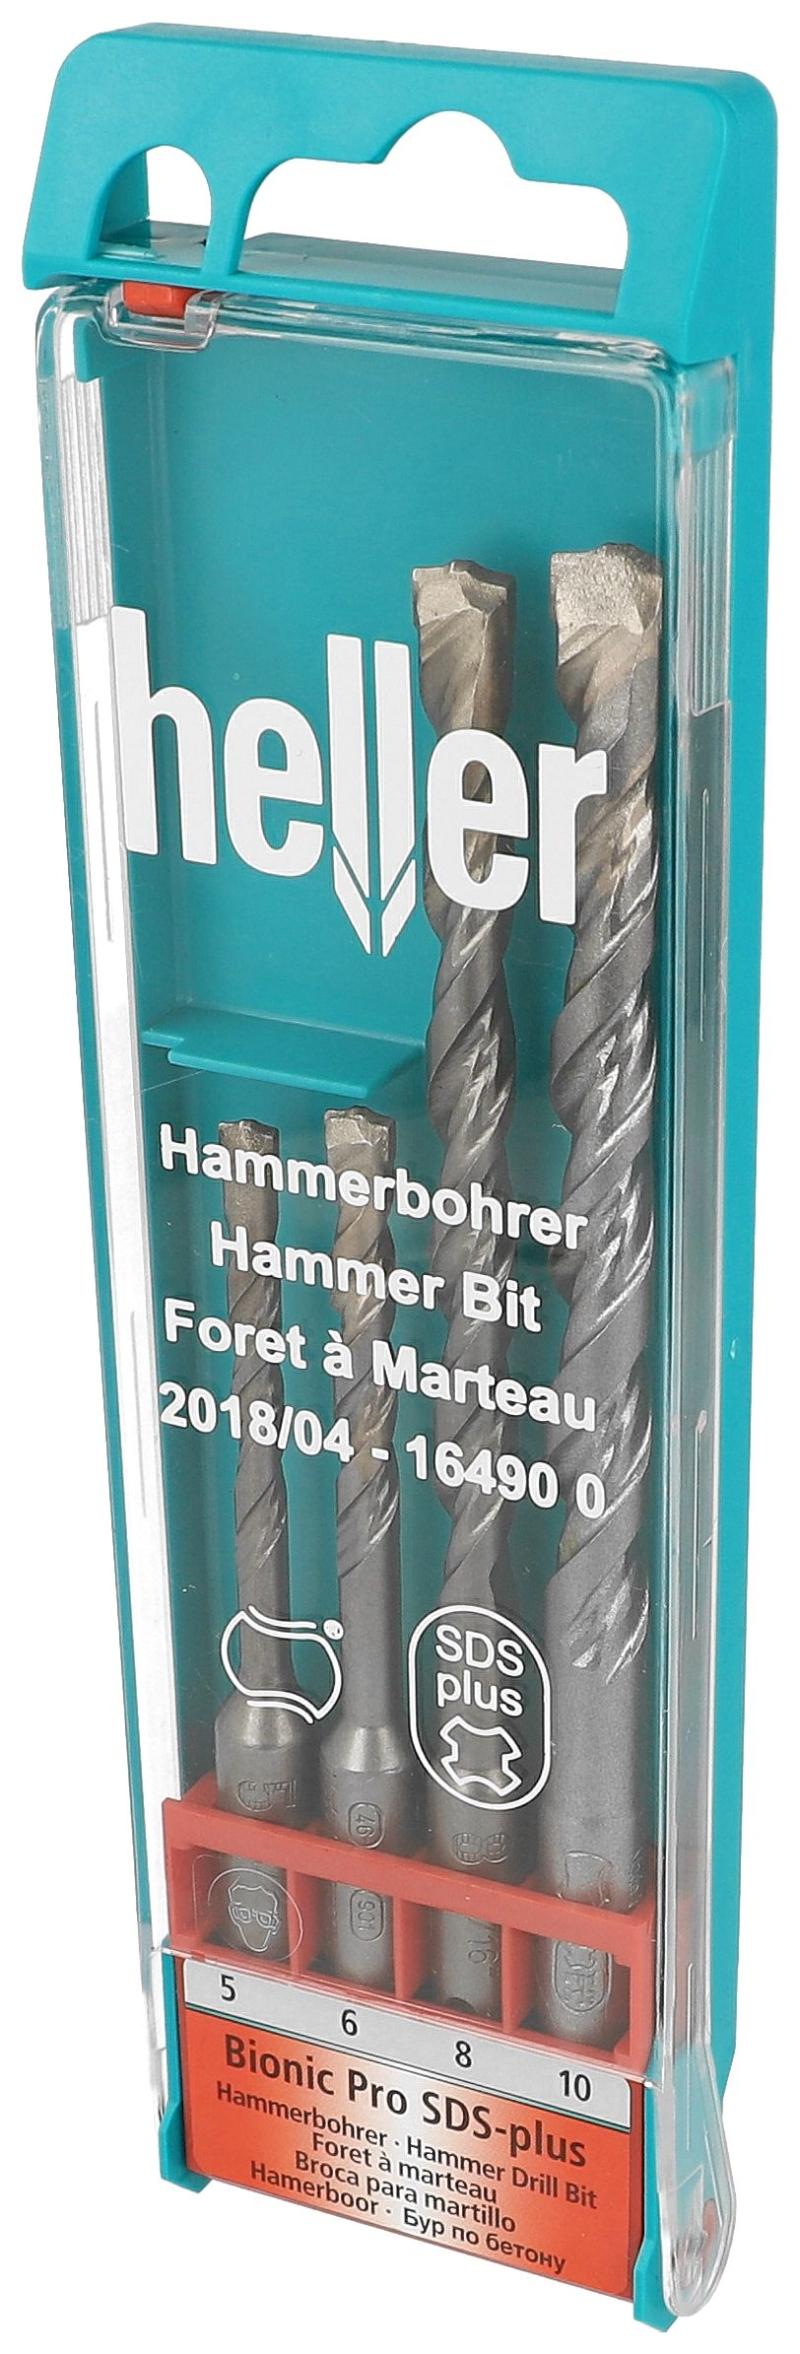 Heller Hammerbohrer SDS-Set 5-10 mm.